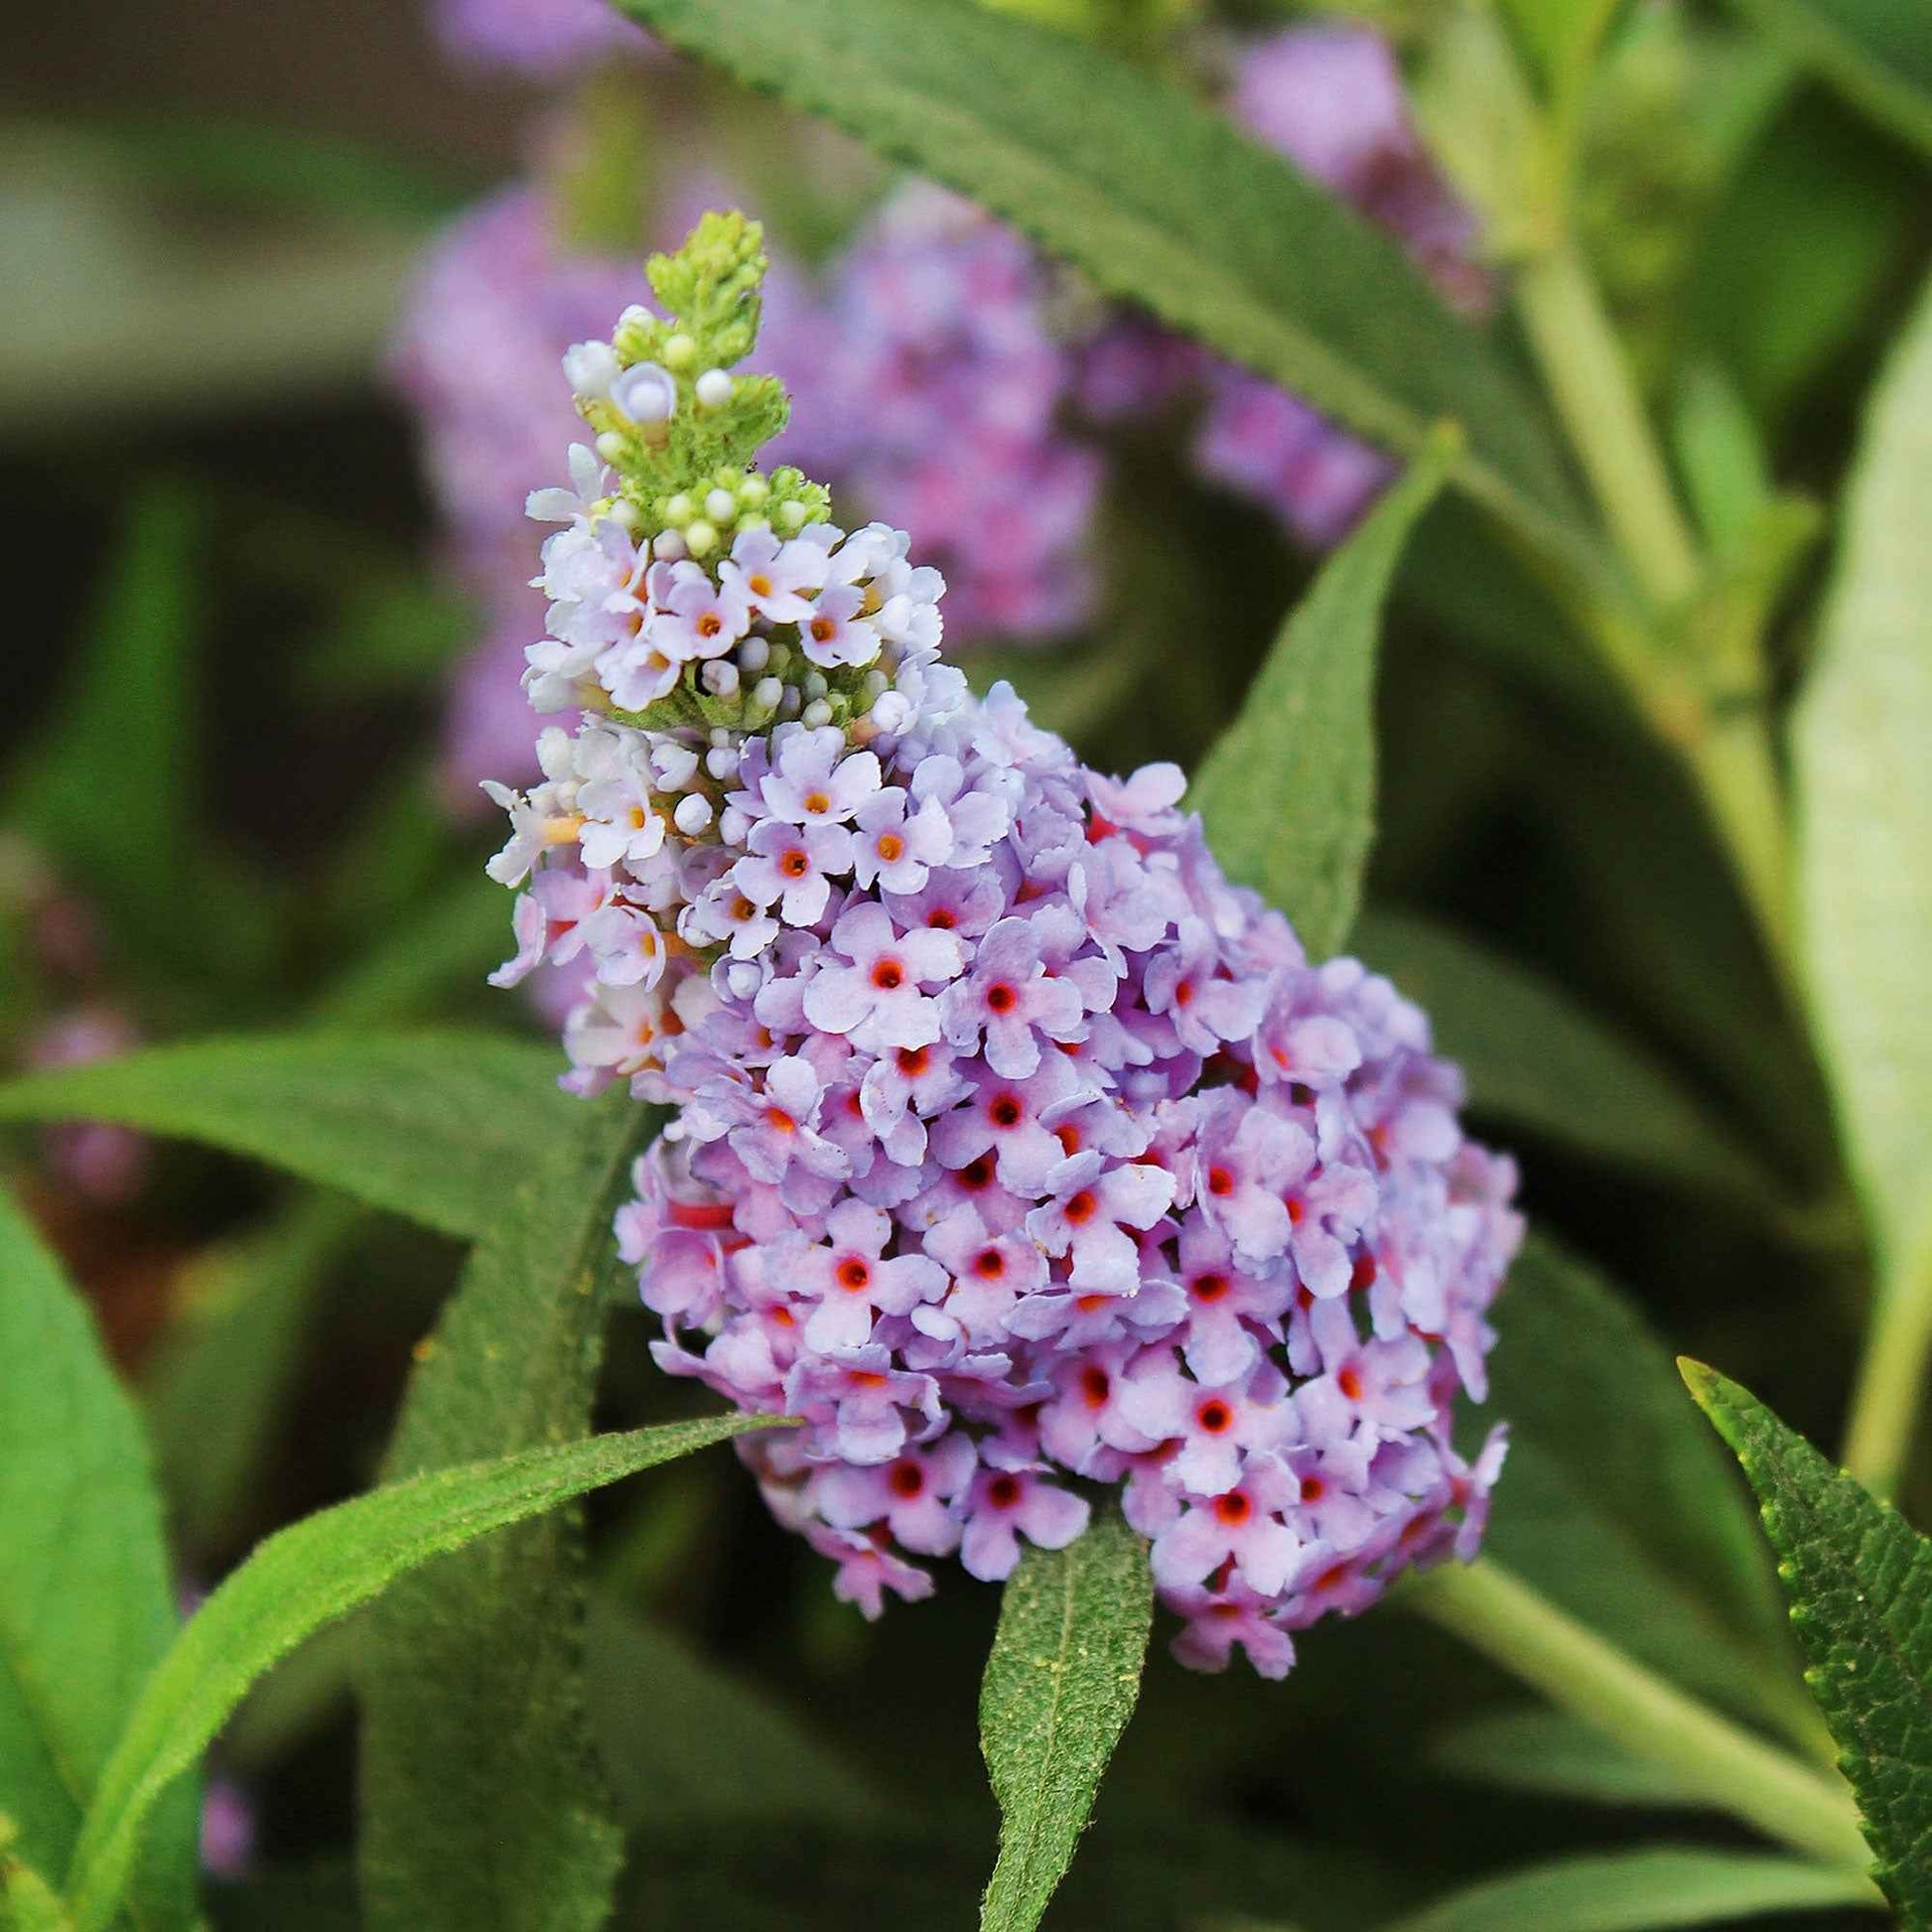 3x Arbre à papillons Buddleja 'Lilac Turtle' + 'White Swan' + 'Blue Sarah' bleu-violet-blanc - Arbustes à papillons et plantes mellifères